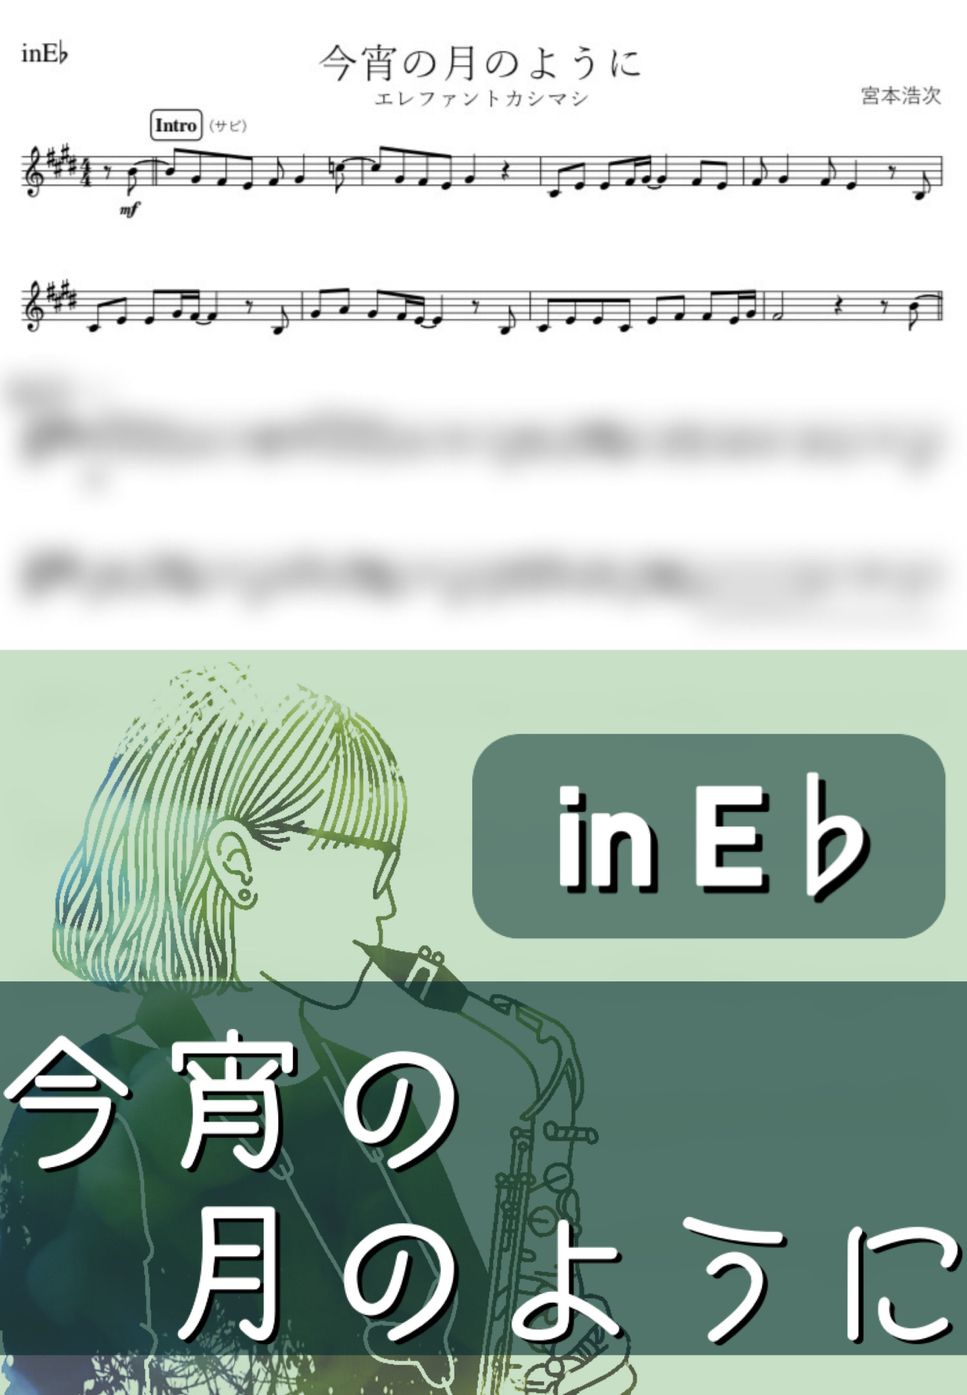 エレファントカシマシ - 今宵の月のように (E♭) by kanamusic